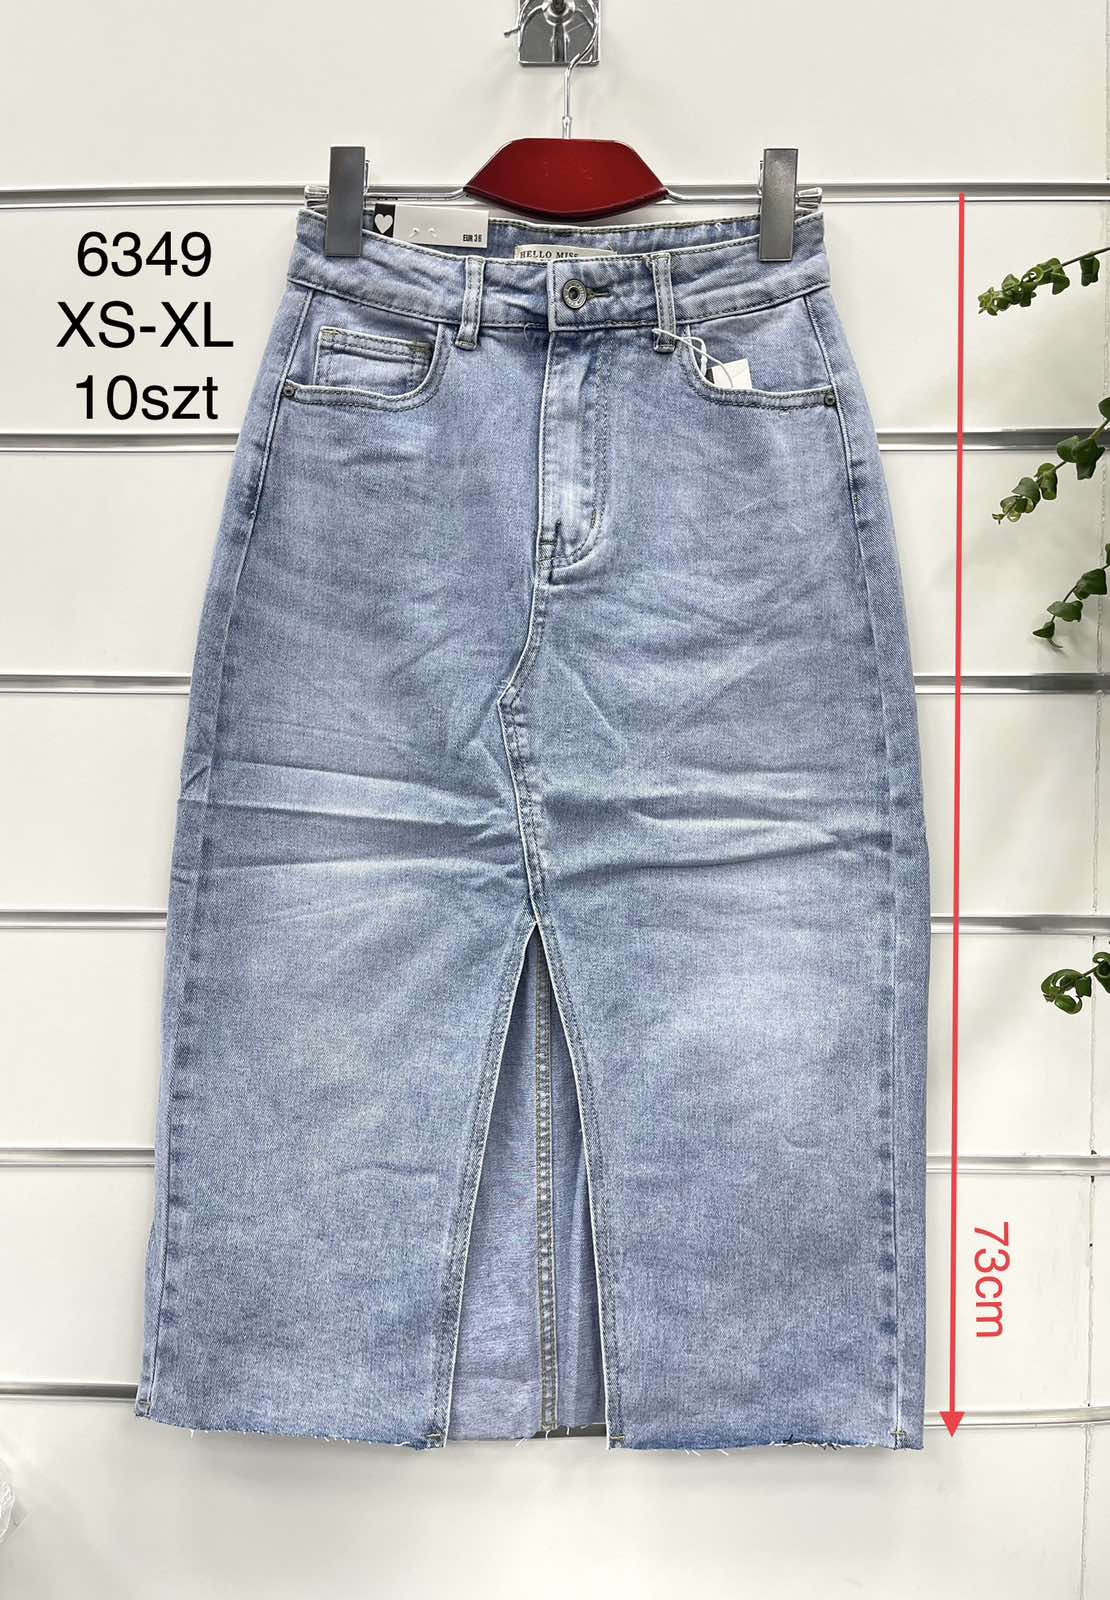 Spódnica  damska jeans  . Roz XS-XL. Paszka 10szt . 1 Kolor .